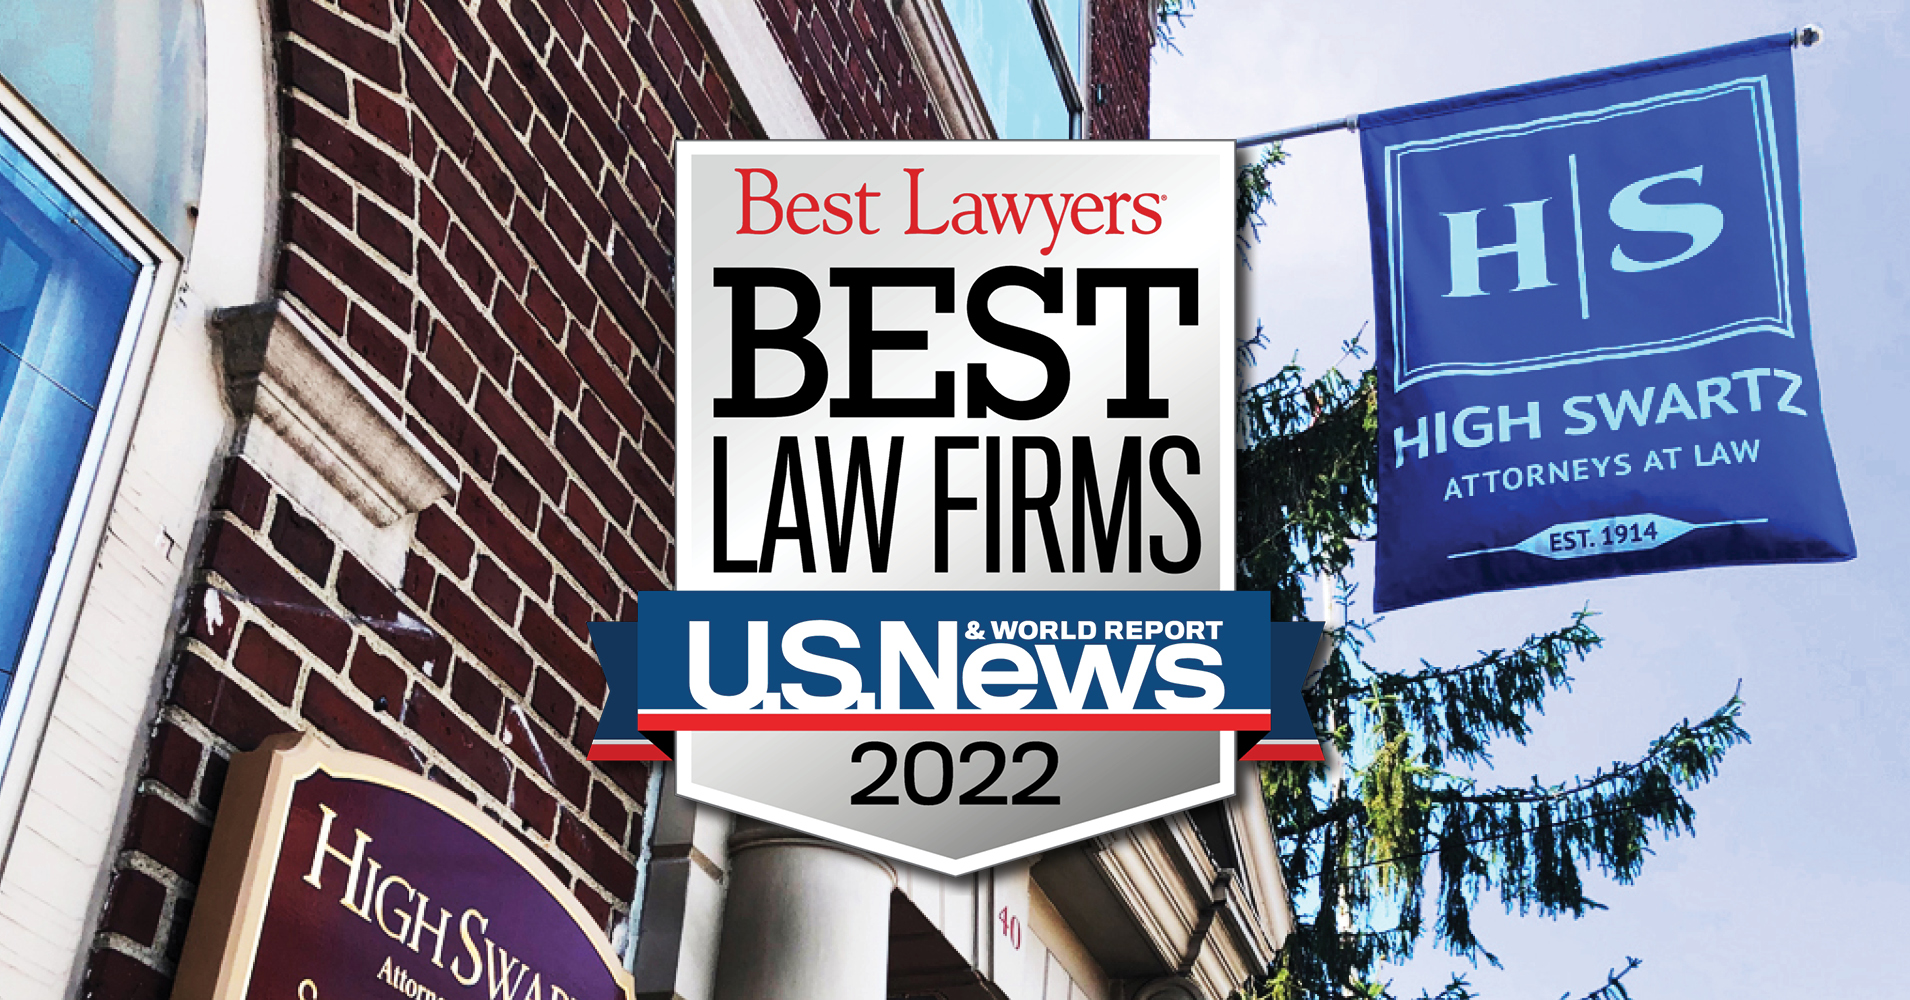 Best Law Firm High Swartz 2022 